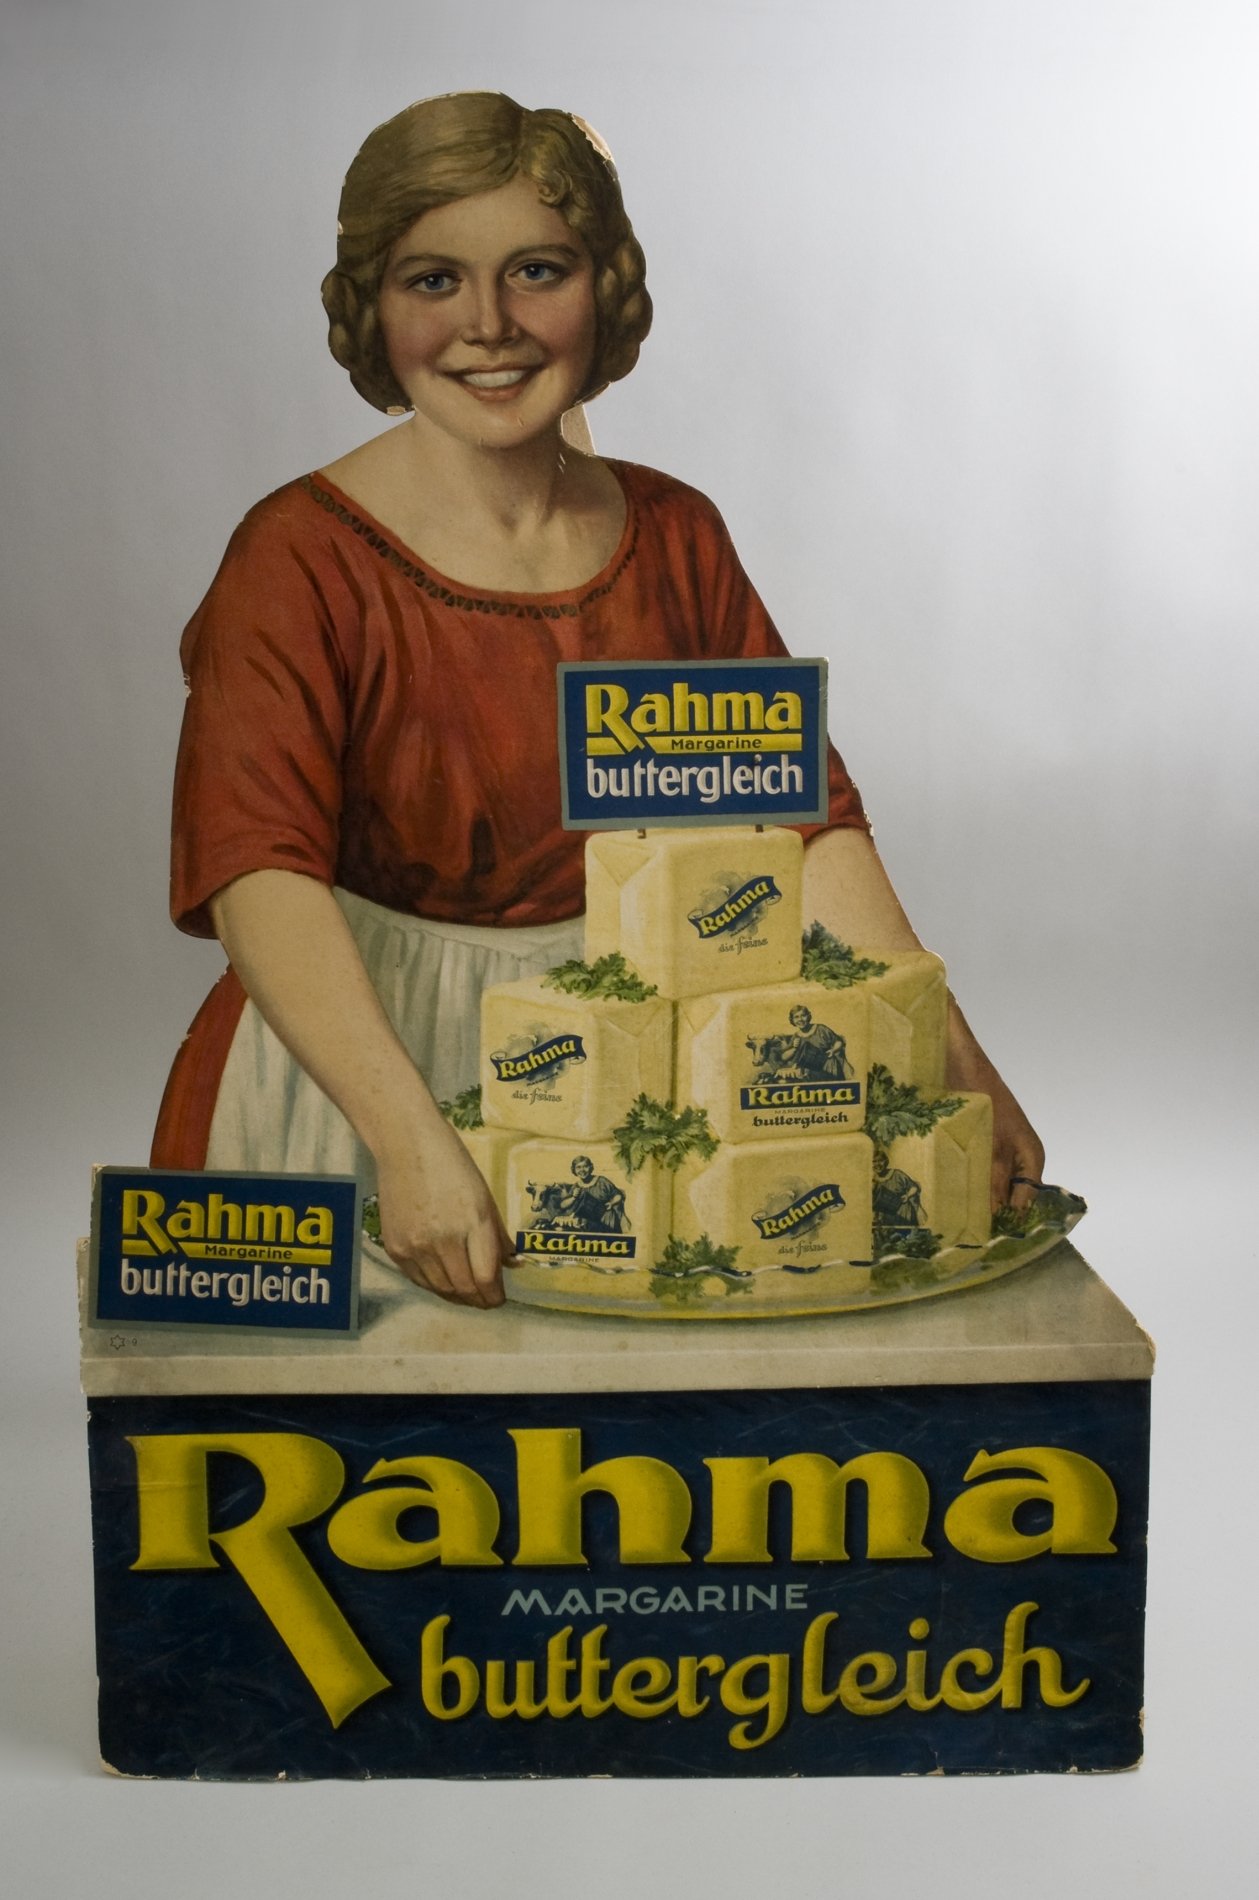 Werbeschild "Rahma - Margarine buttergleich" (Stiftung Domäne Dahlem - Landgut und Museum, Weiternutzung nur mit Genehmigung des Museums CC BY-NC-SA)